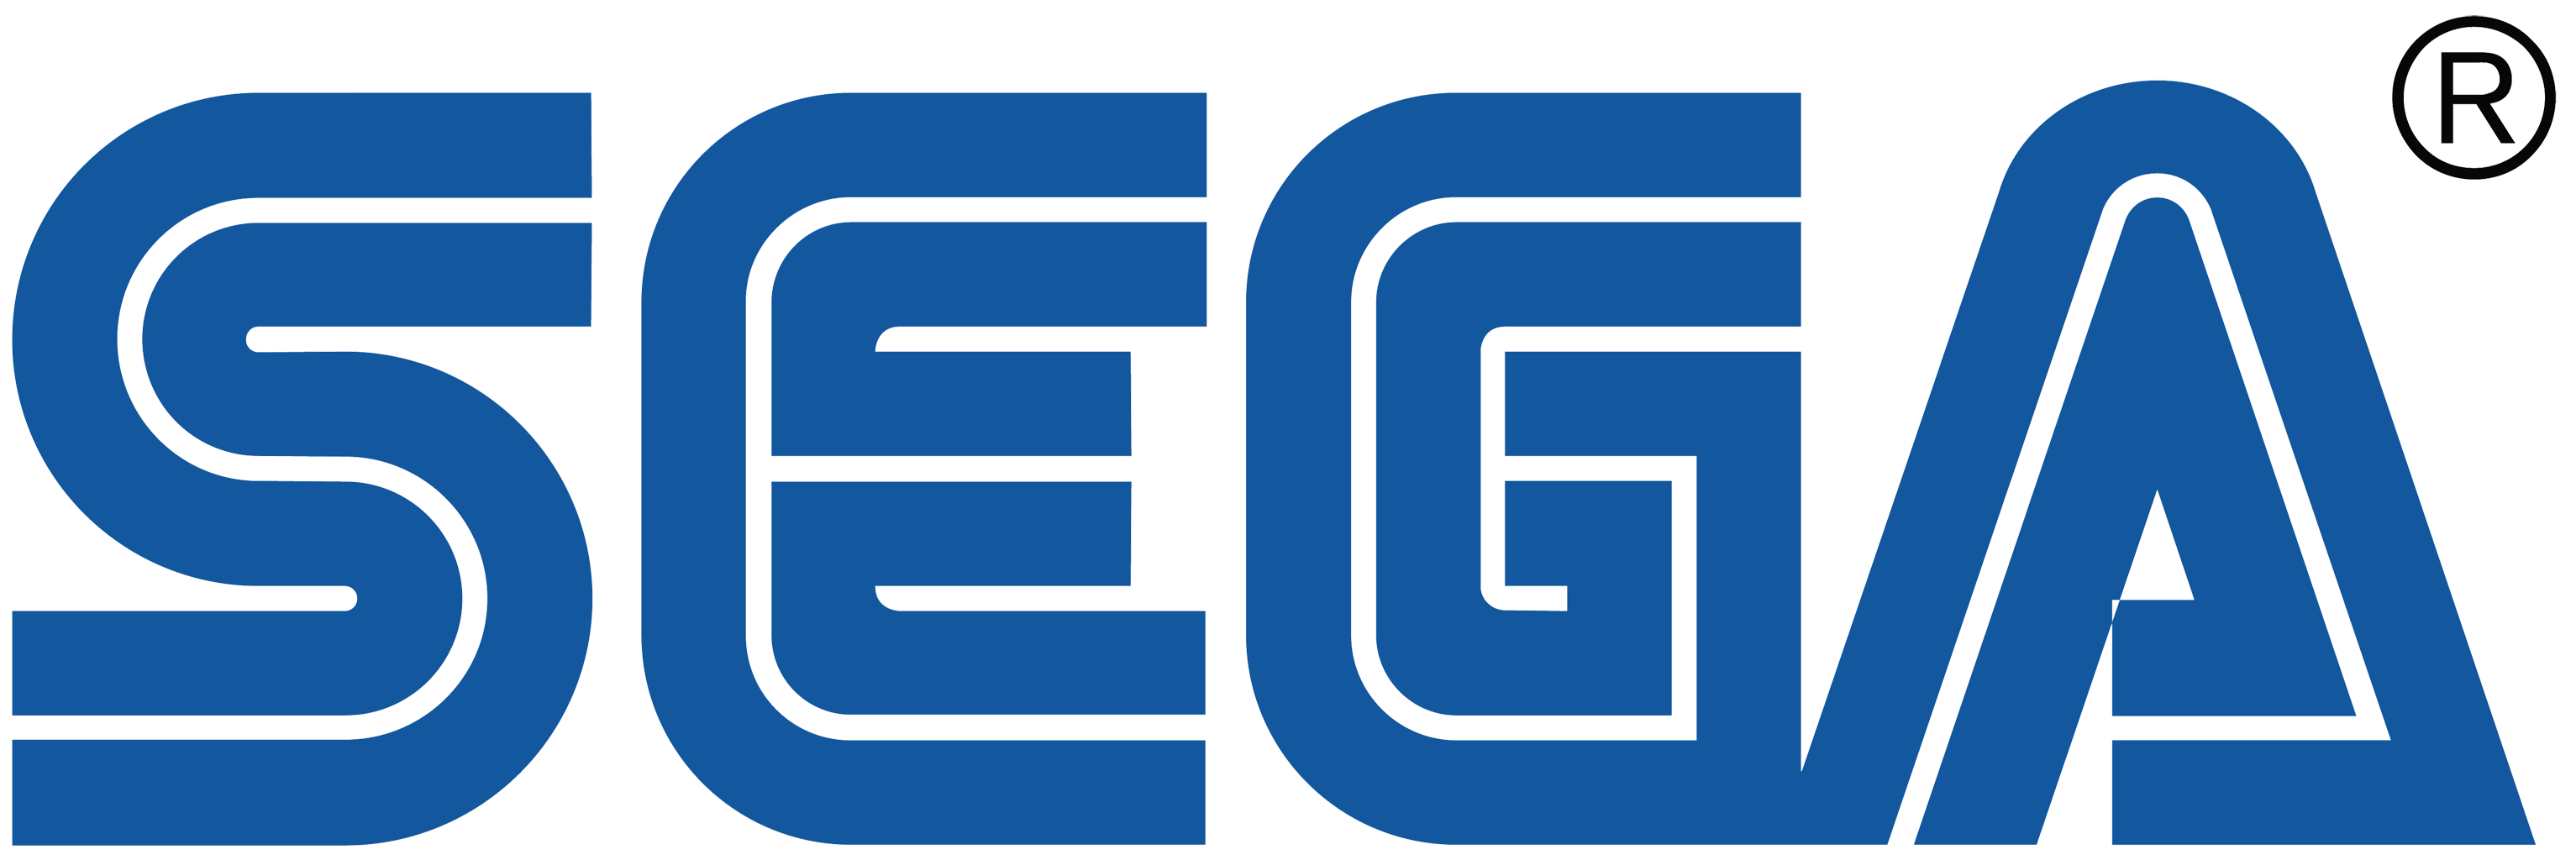 SEGA_logo